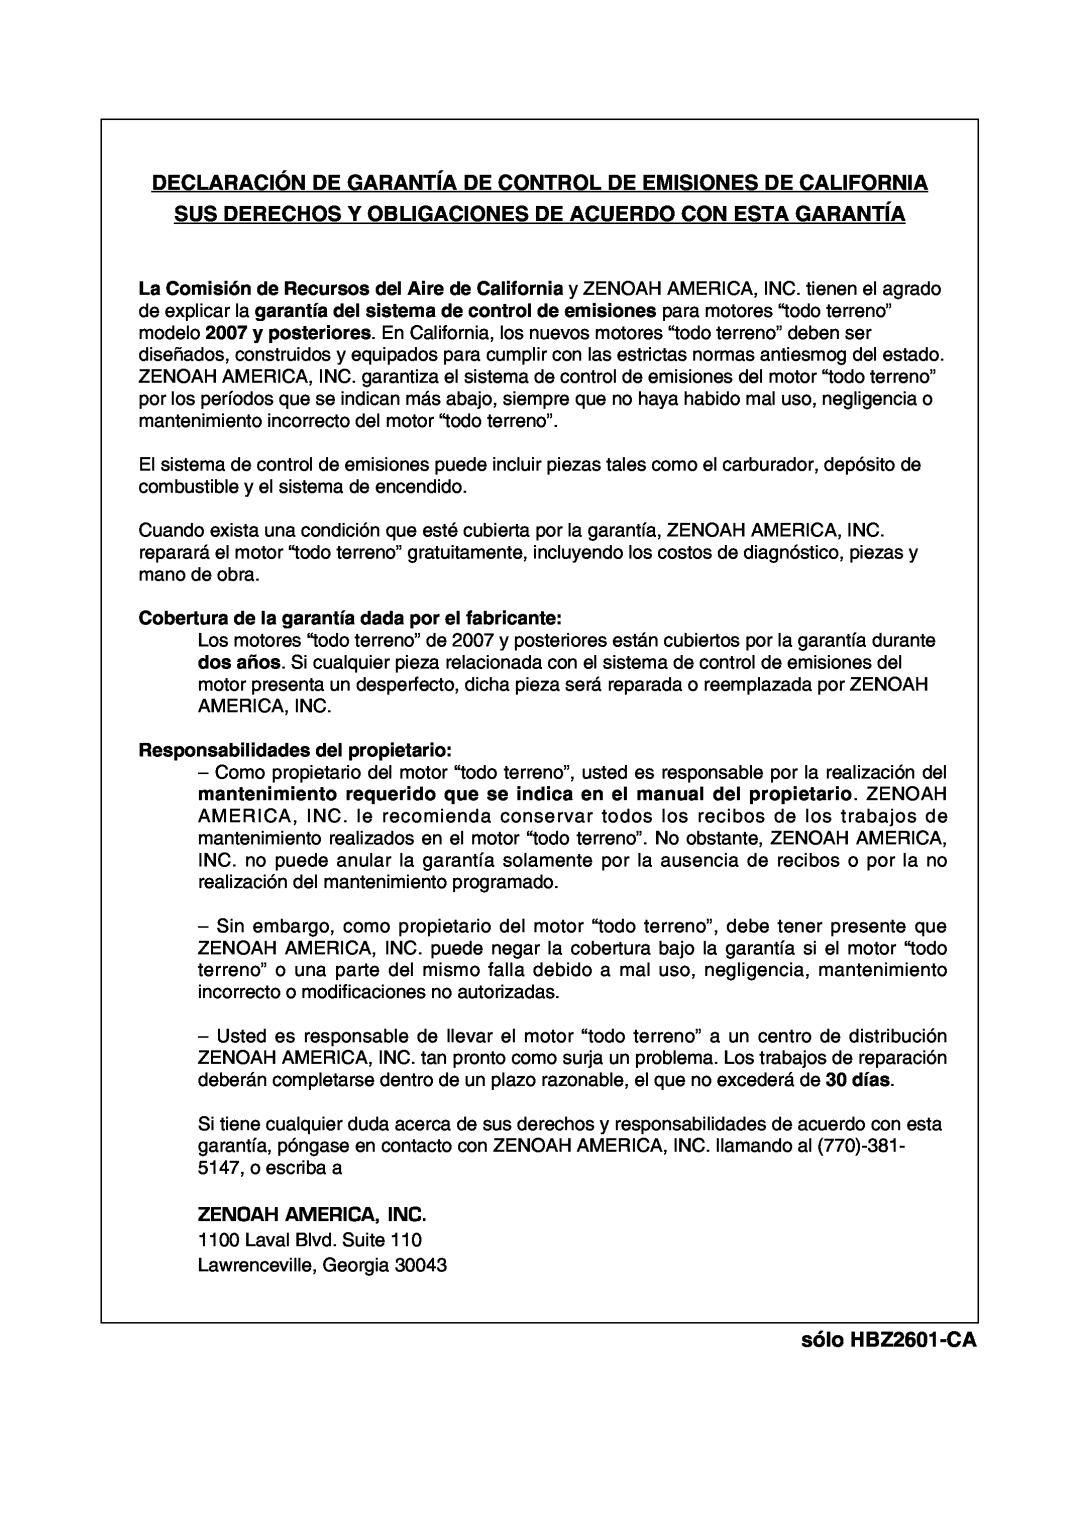 Zenoah manual Declaración De Garantía De Control De Emisiones De California, sólo HBZ2601-CA 